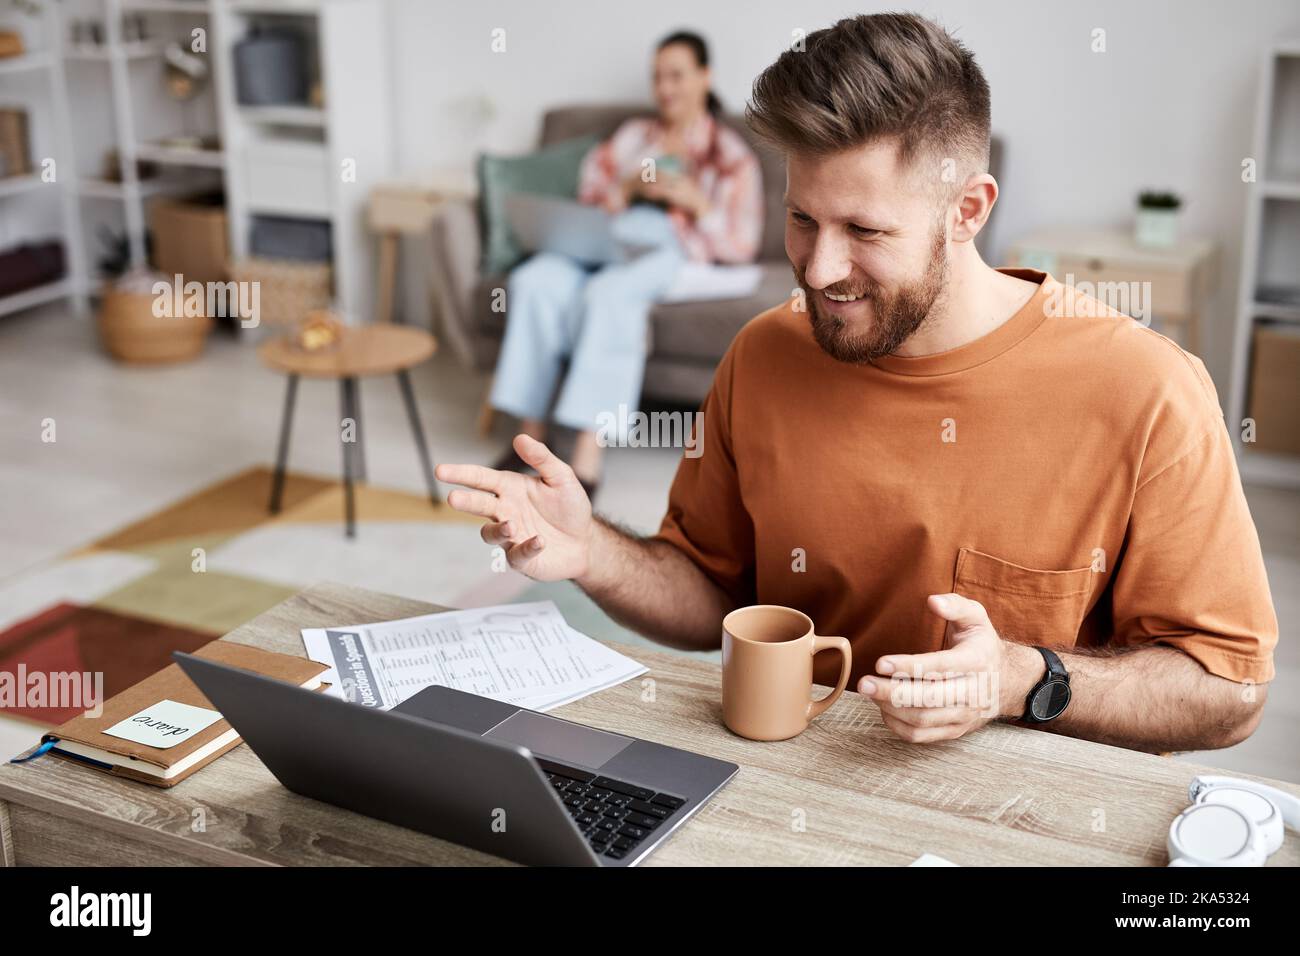 Junger lächelnder Mann in Casualwear, der zu Hause vor dem Laptop sitzt und während des Online-Unterrichts mit seinem Tutor kommuniziert Stockfoto